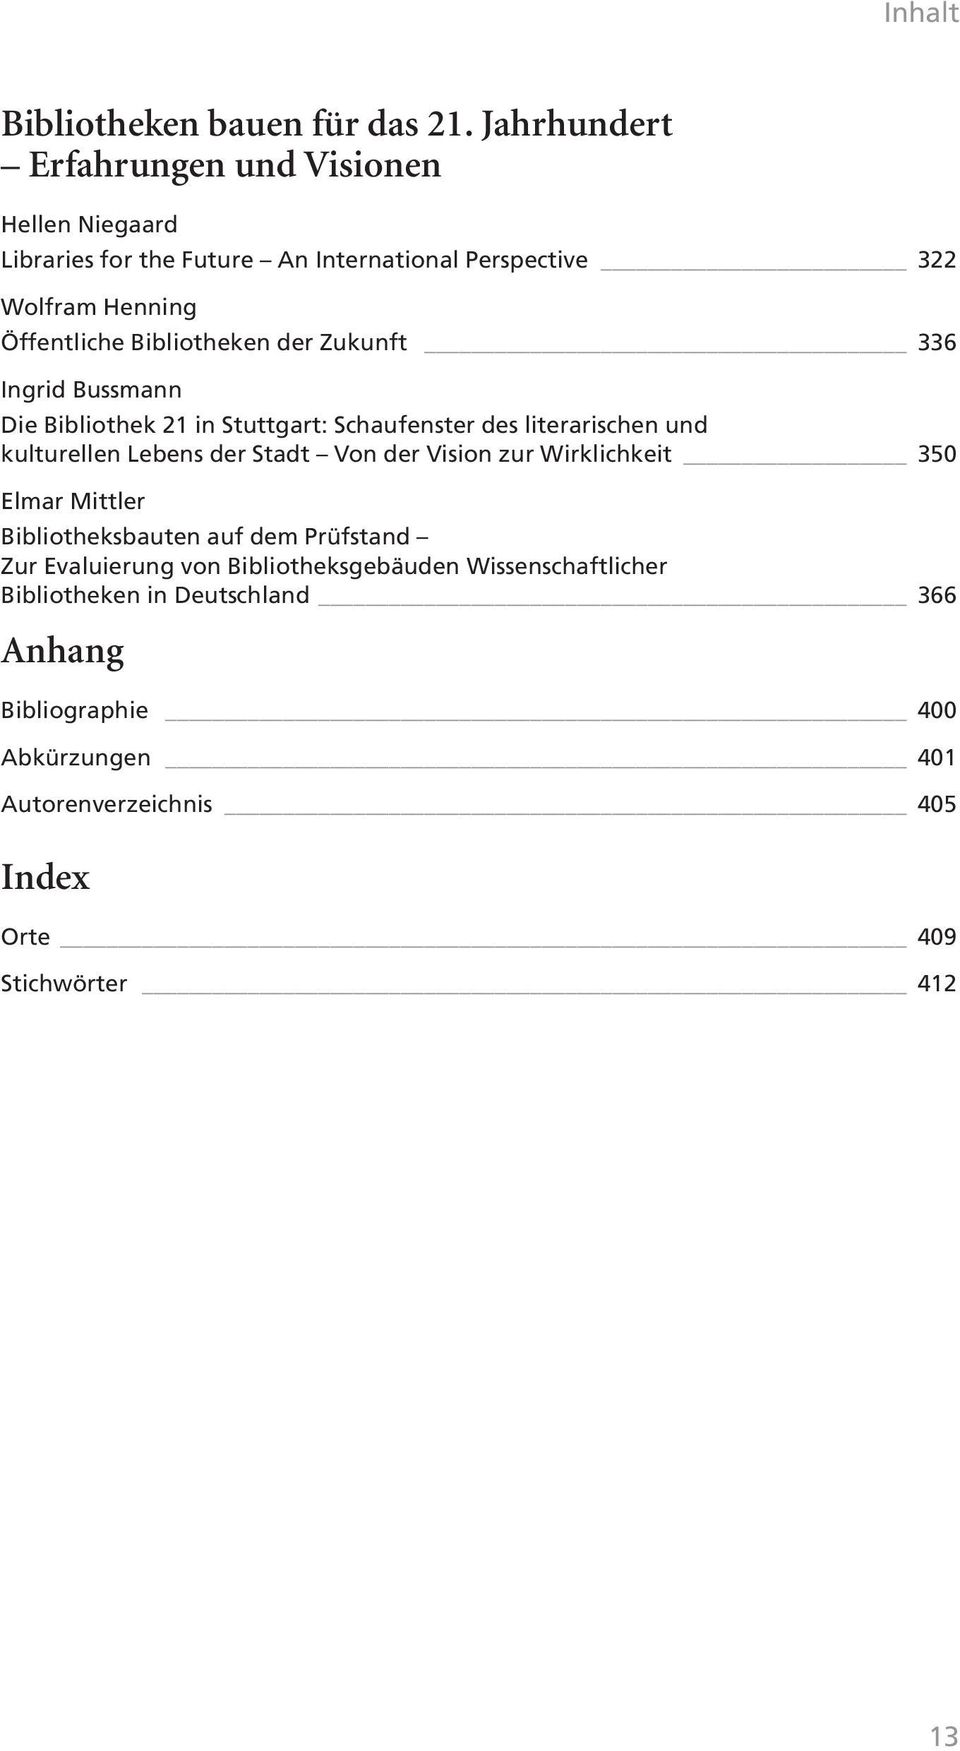 der Zukunft 336 Ingrid Bussmann Die Bibliothek 21 in Stuttgart: Schaufenster des literarischen und kulturellen Lebens der Stadt Von der Vision zur